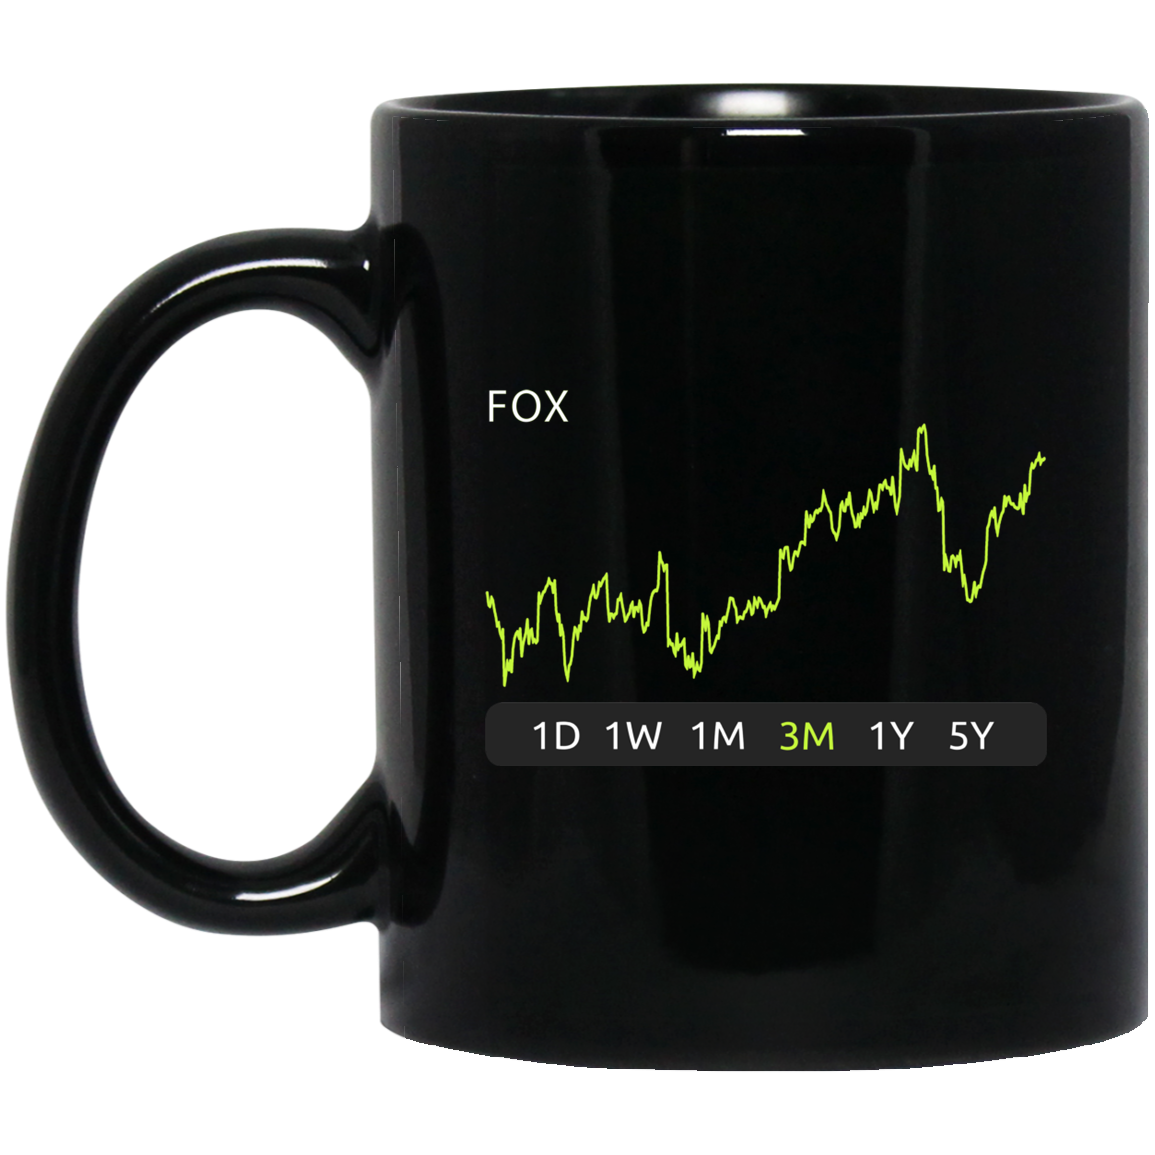 FOX Stock 3m Mug